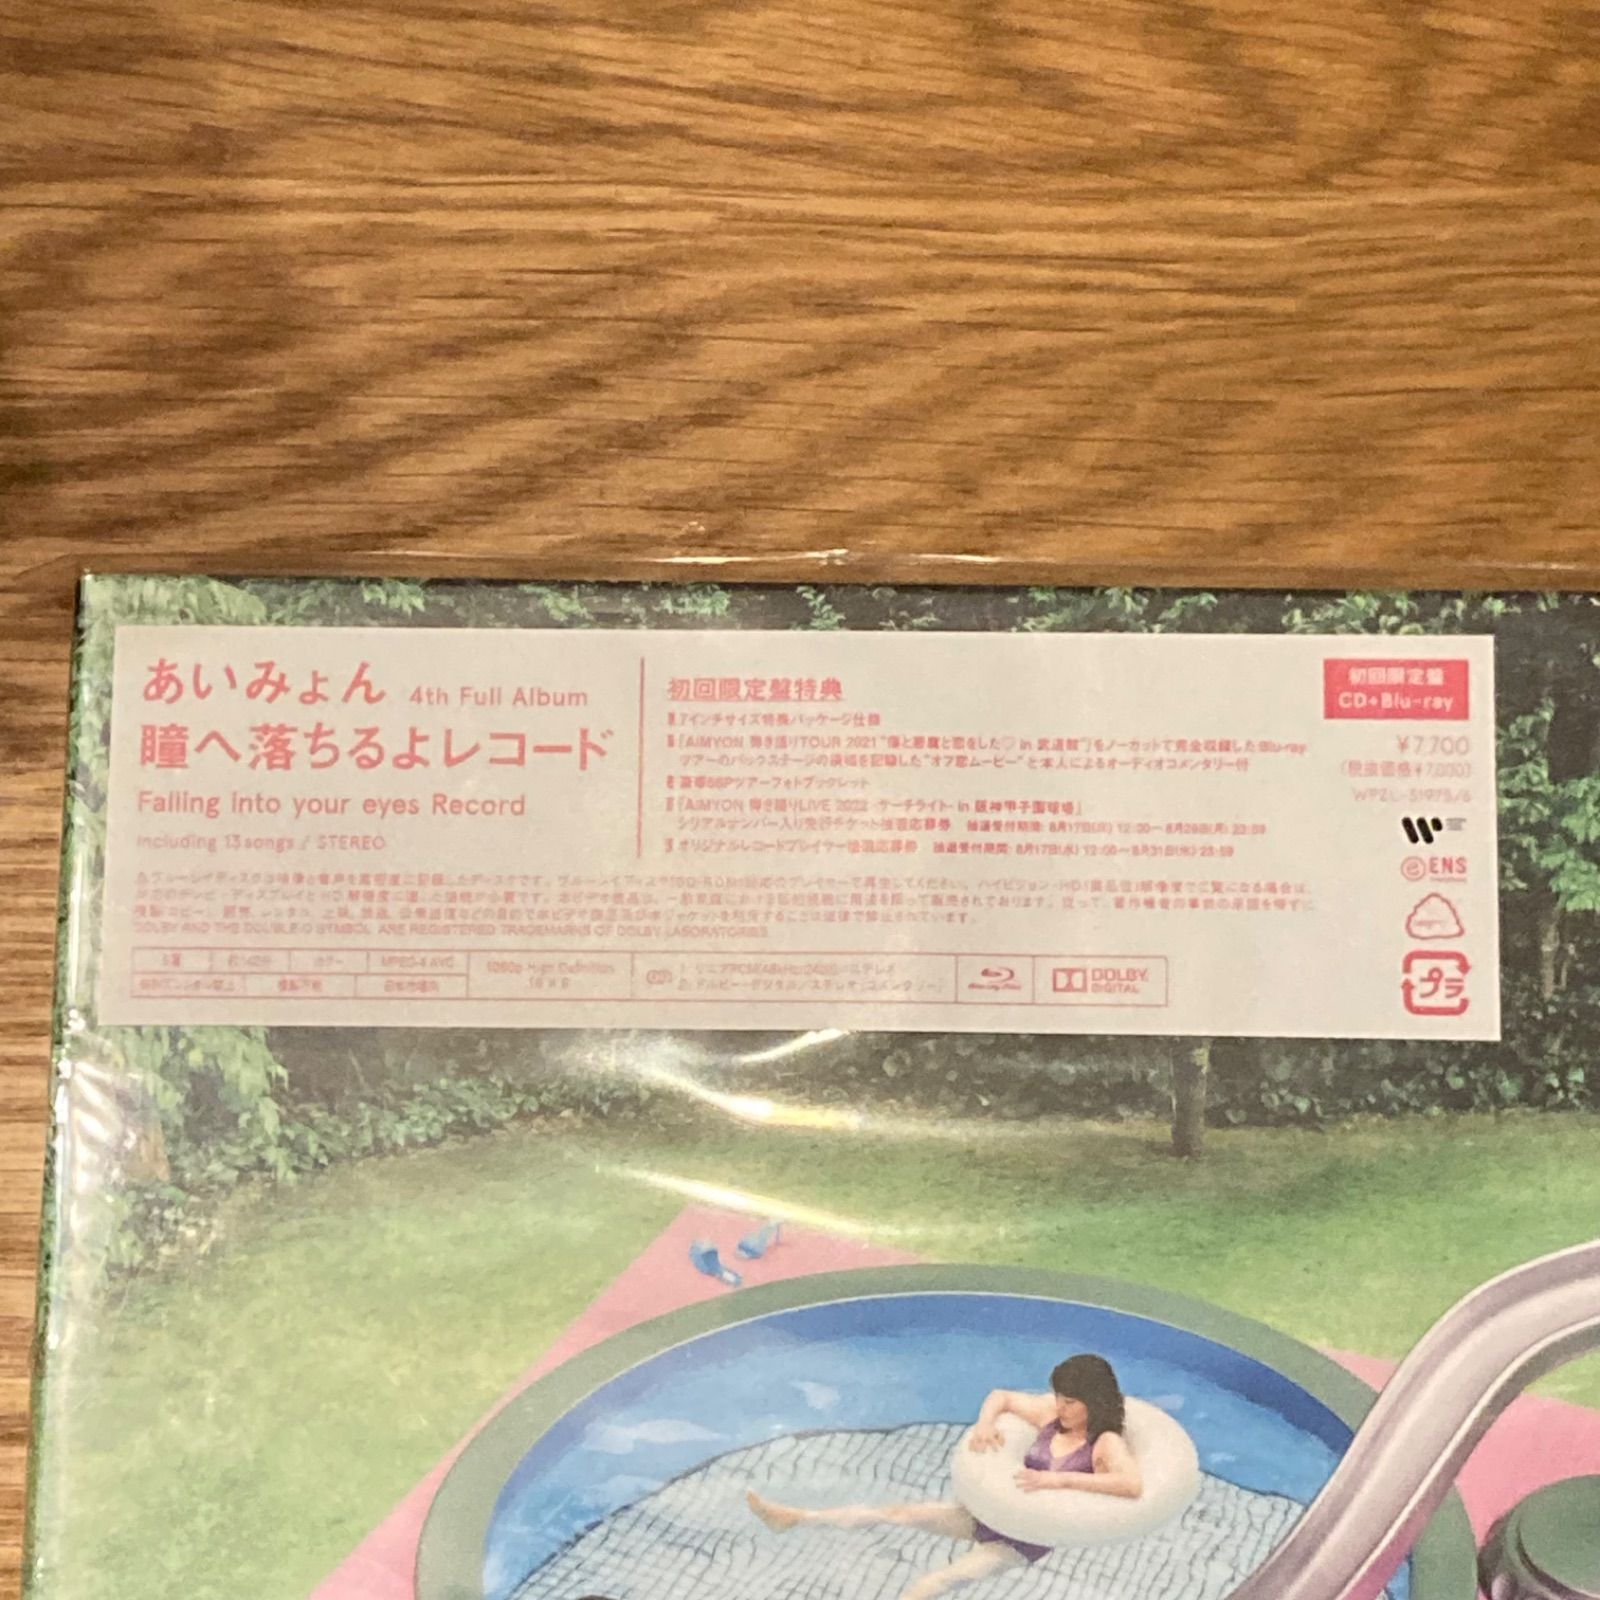 あいみょん/ 瞳へ落ちるよレコード 初回限定盤【CD+Blu-ray】 - メルカリ